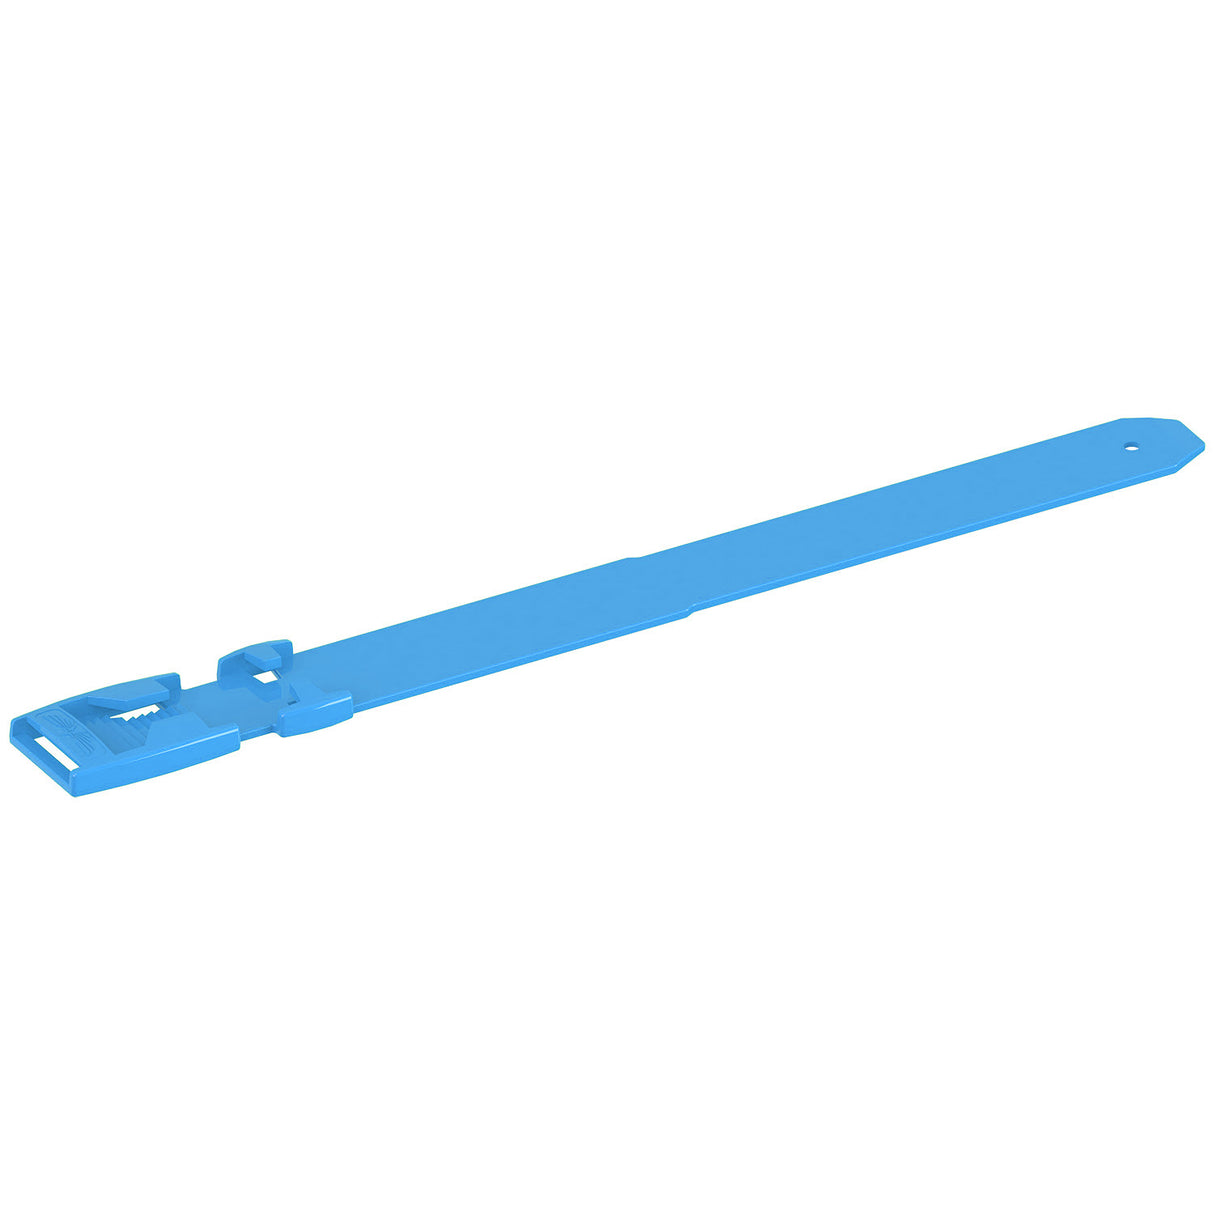 Leg band/Anklet 37 cm Light blue